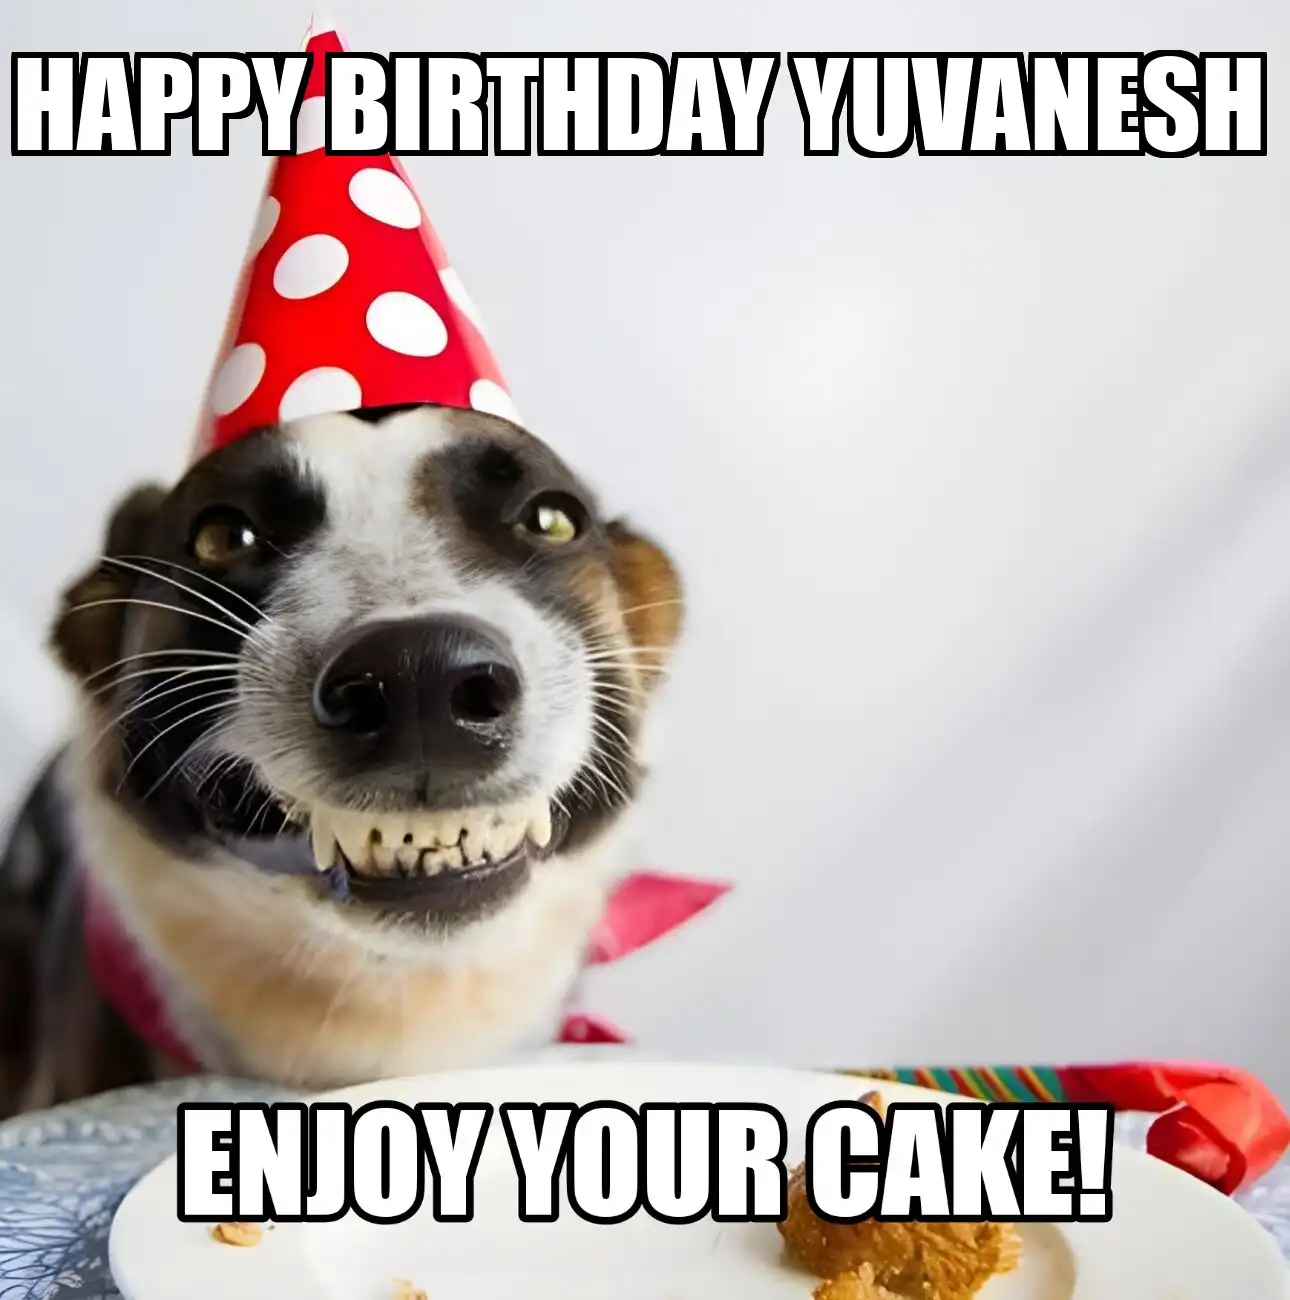 Happy Birthday Yuvanesh Enjoy Your Cake Dog Meme